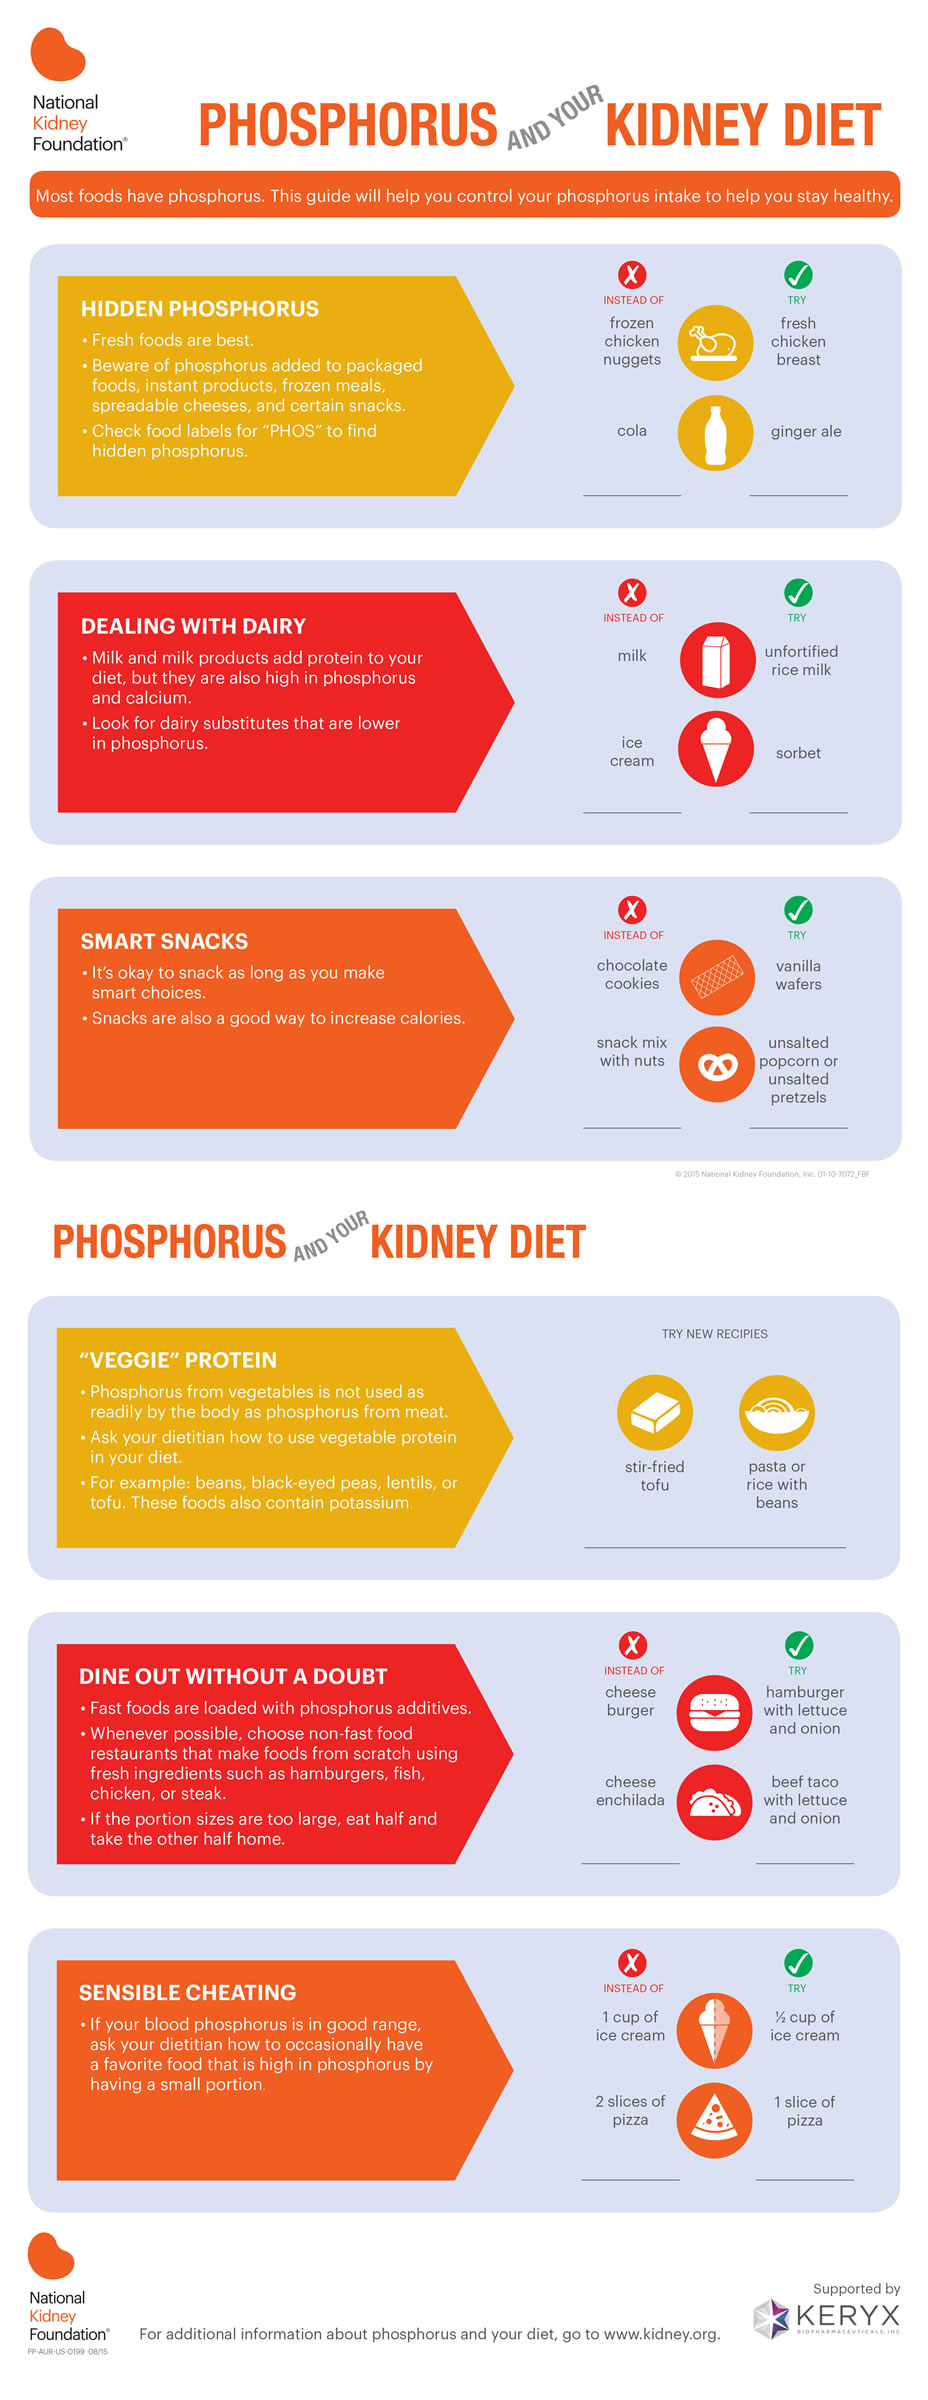 phosphorus and kidney diet